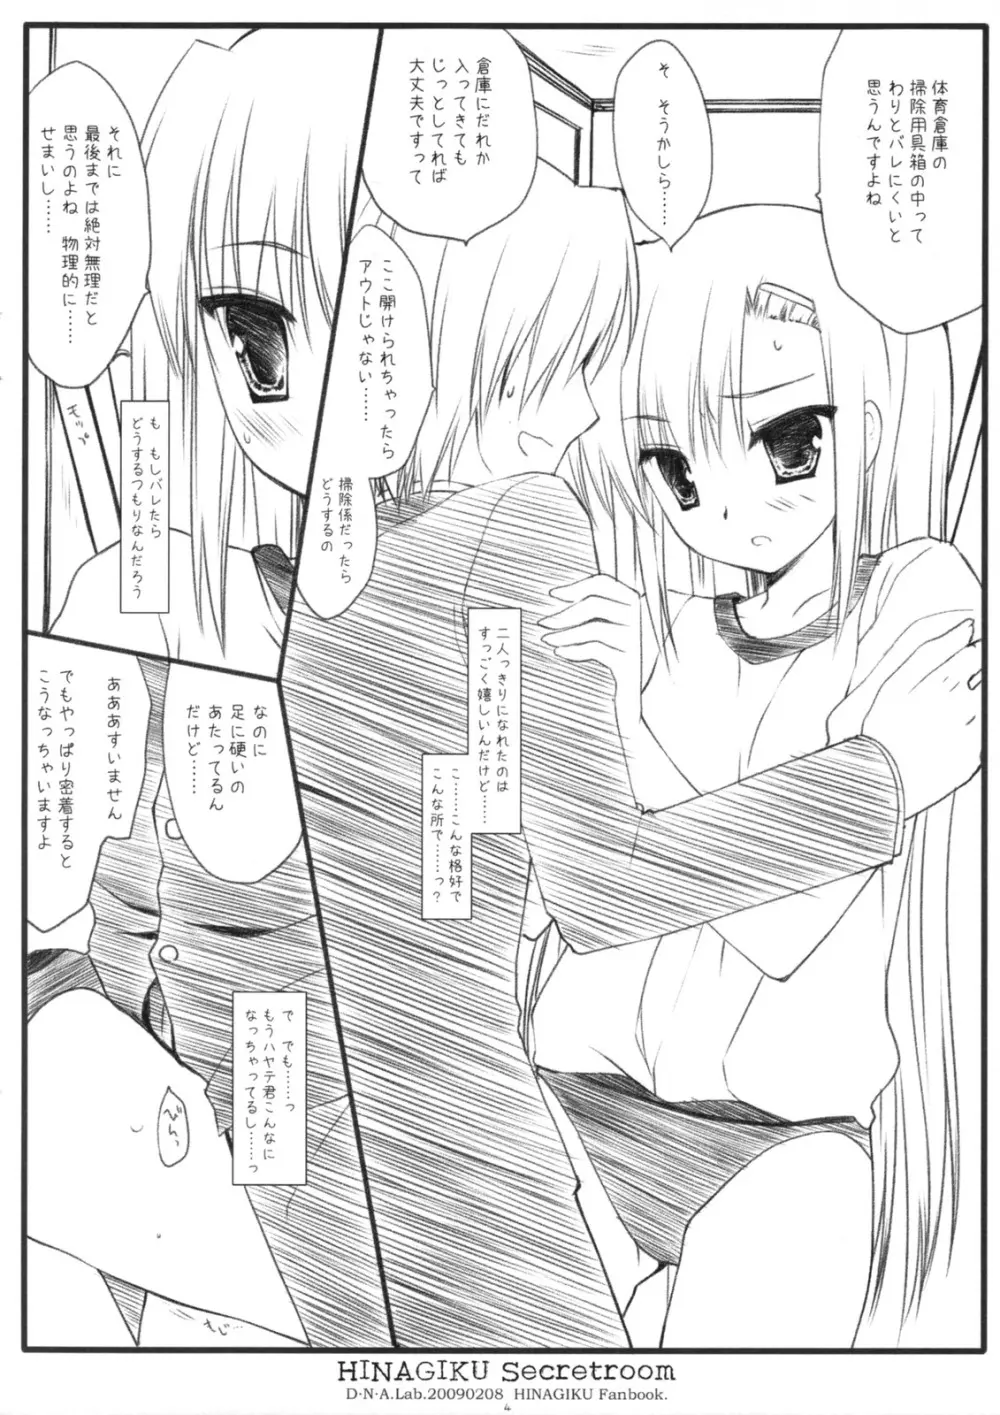 HINAGIKU Secretroom 3ページ